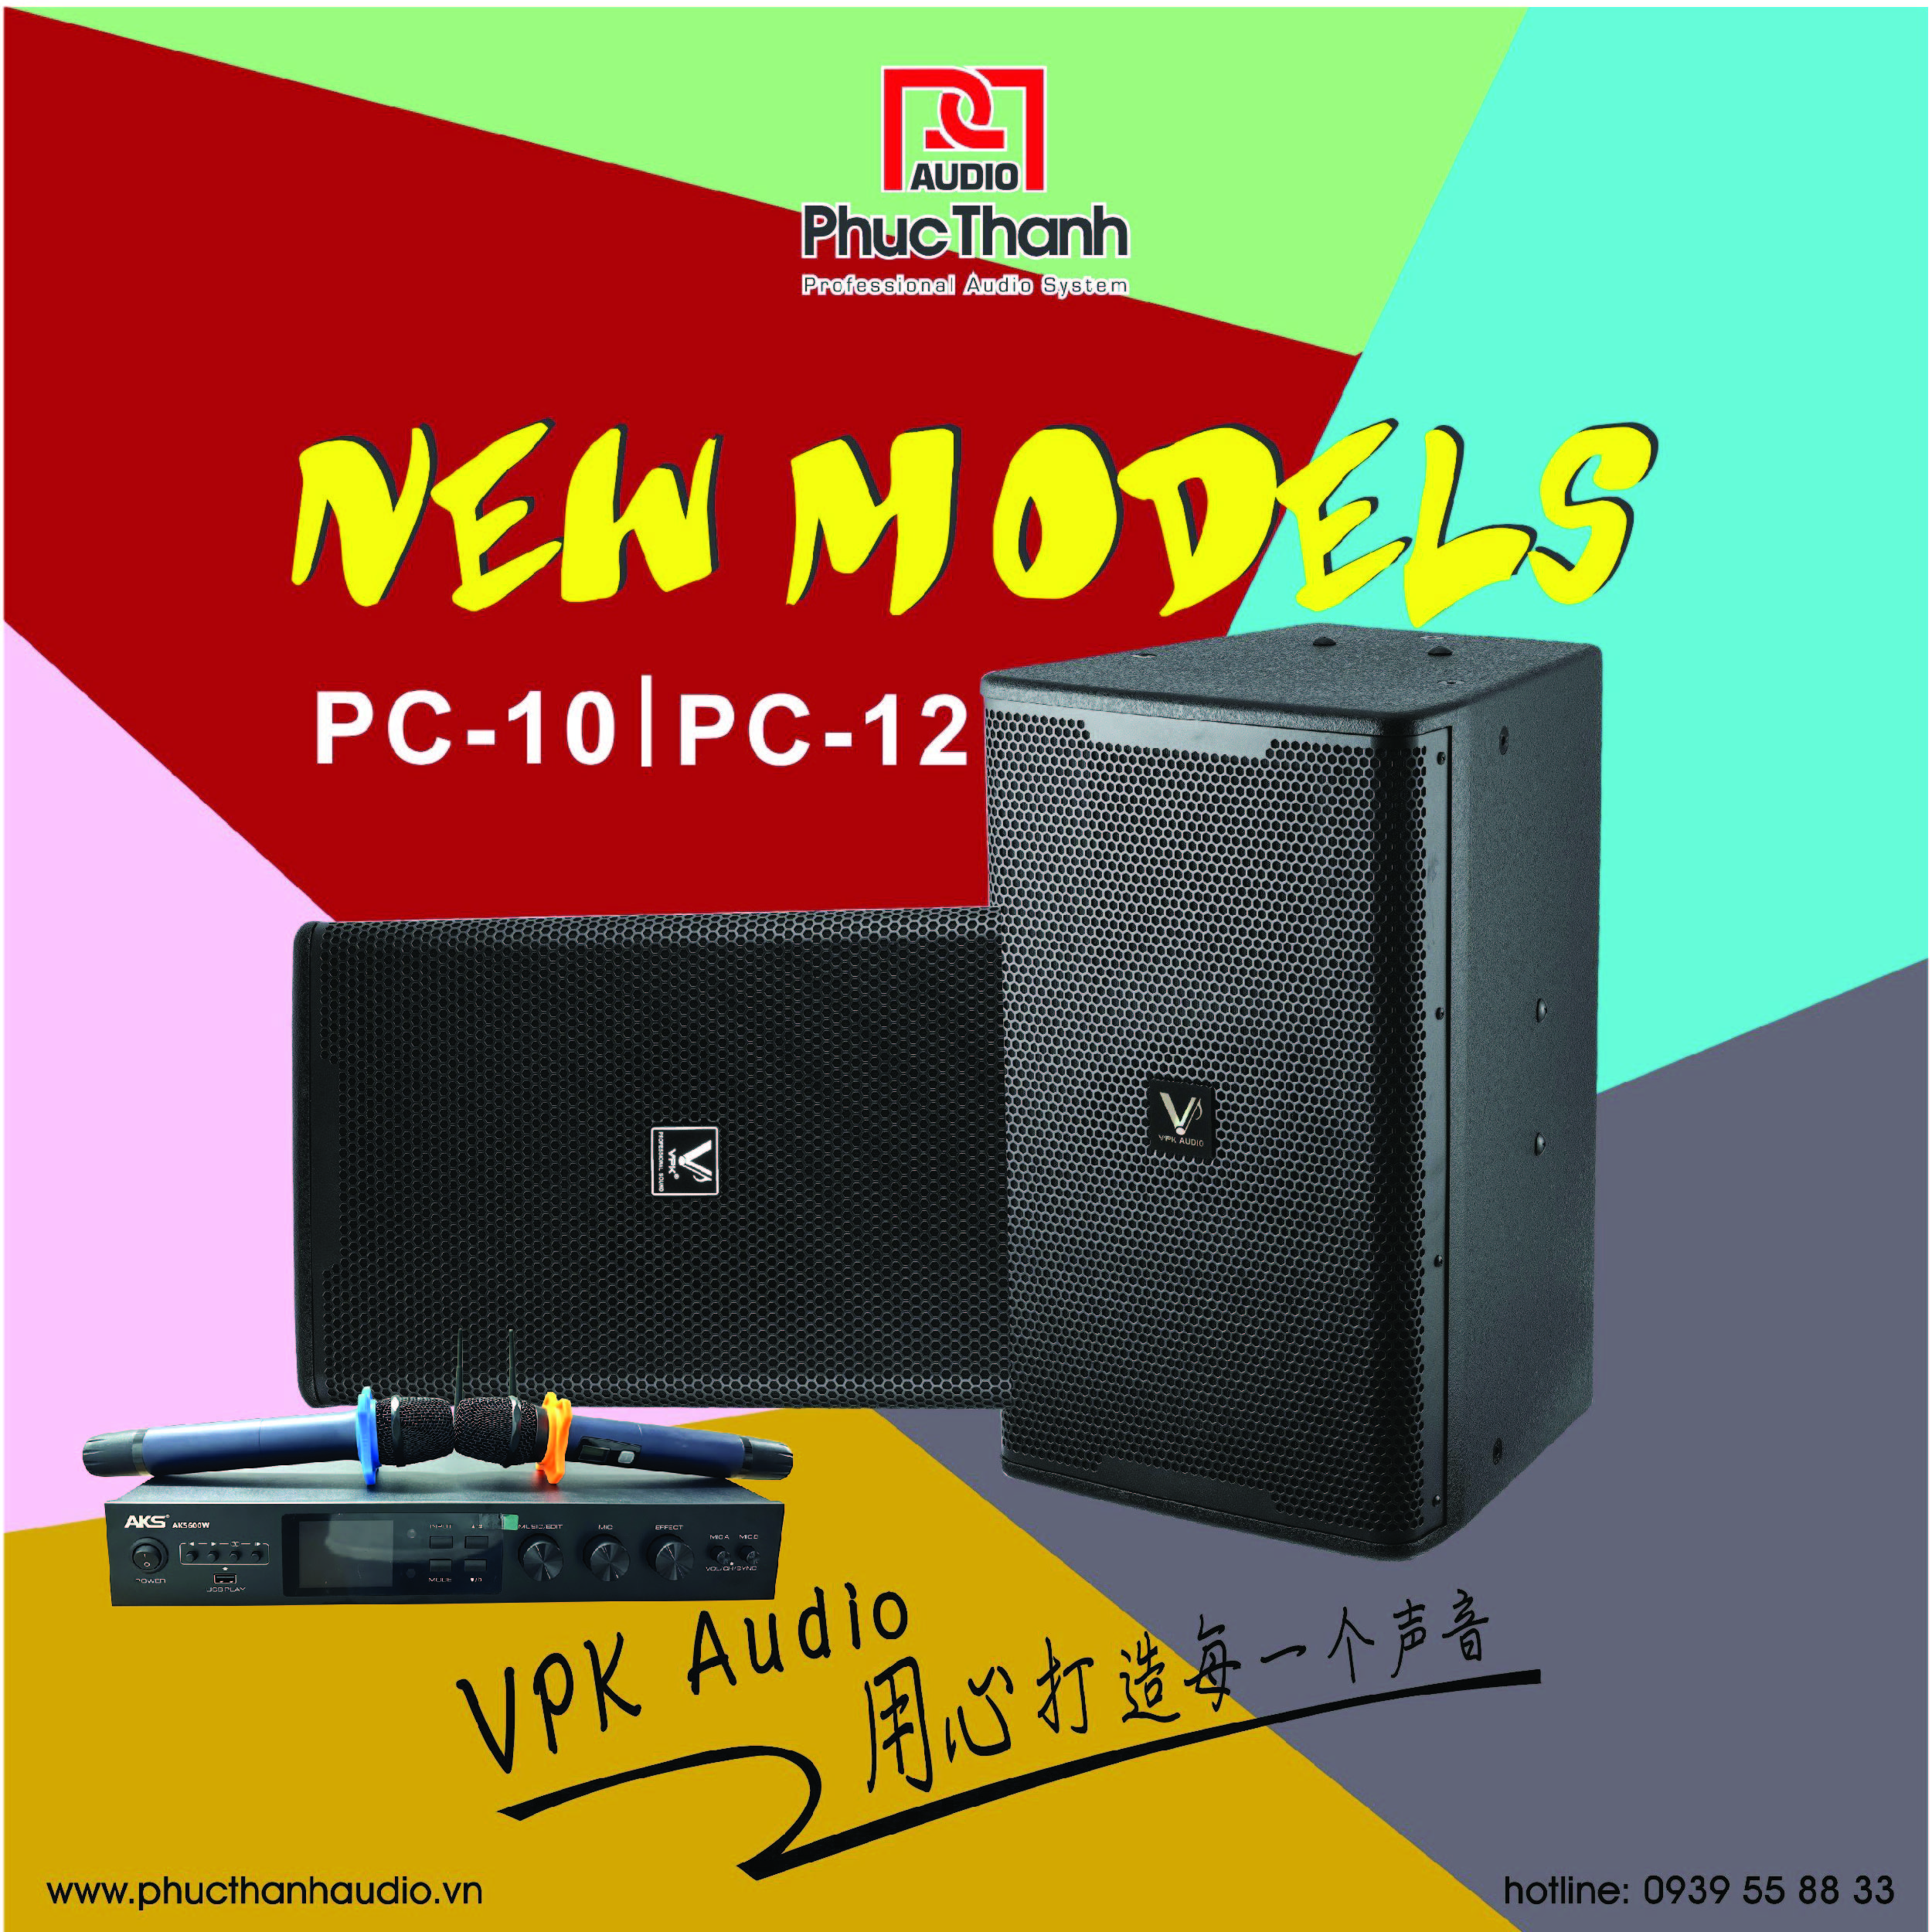 Loa VPK PC-12 - Dòng loa toàn dải bass 30 giá rẻ nhất thị trường hiện nay!